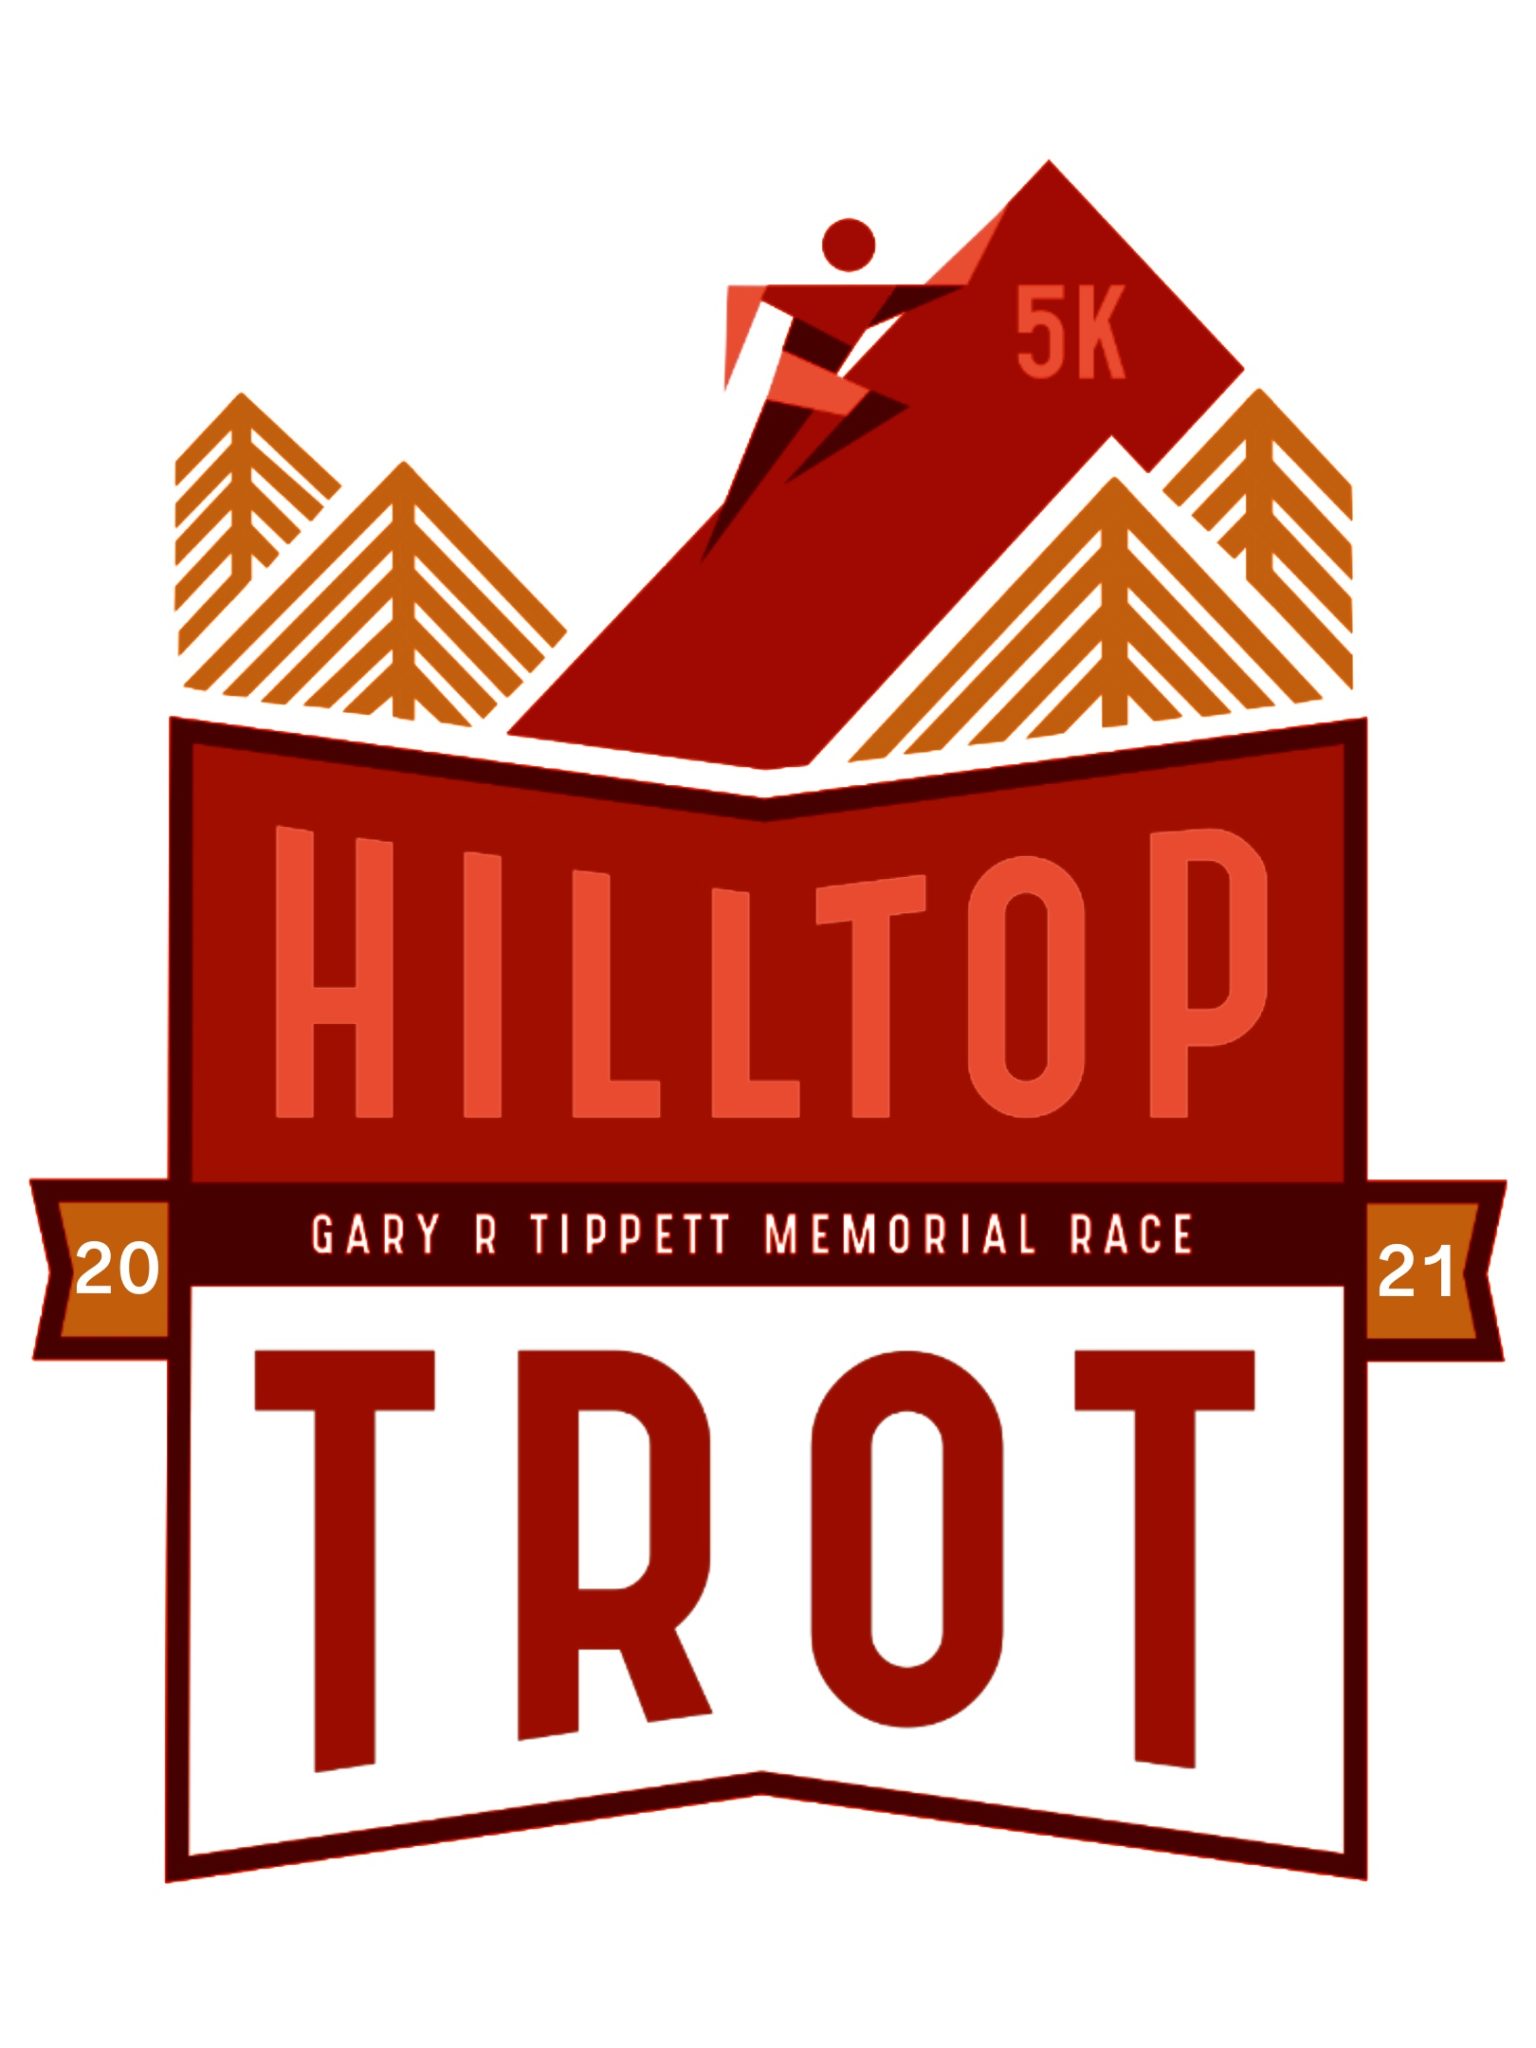 Hilltop Trot 5K (Gary R Tippett Memorial Race) logo on RaceRaves